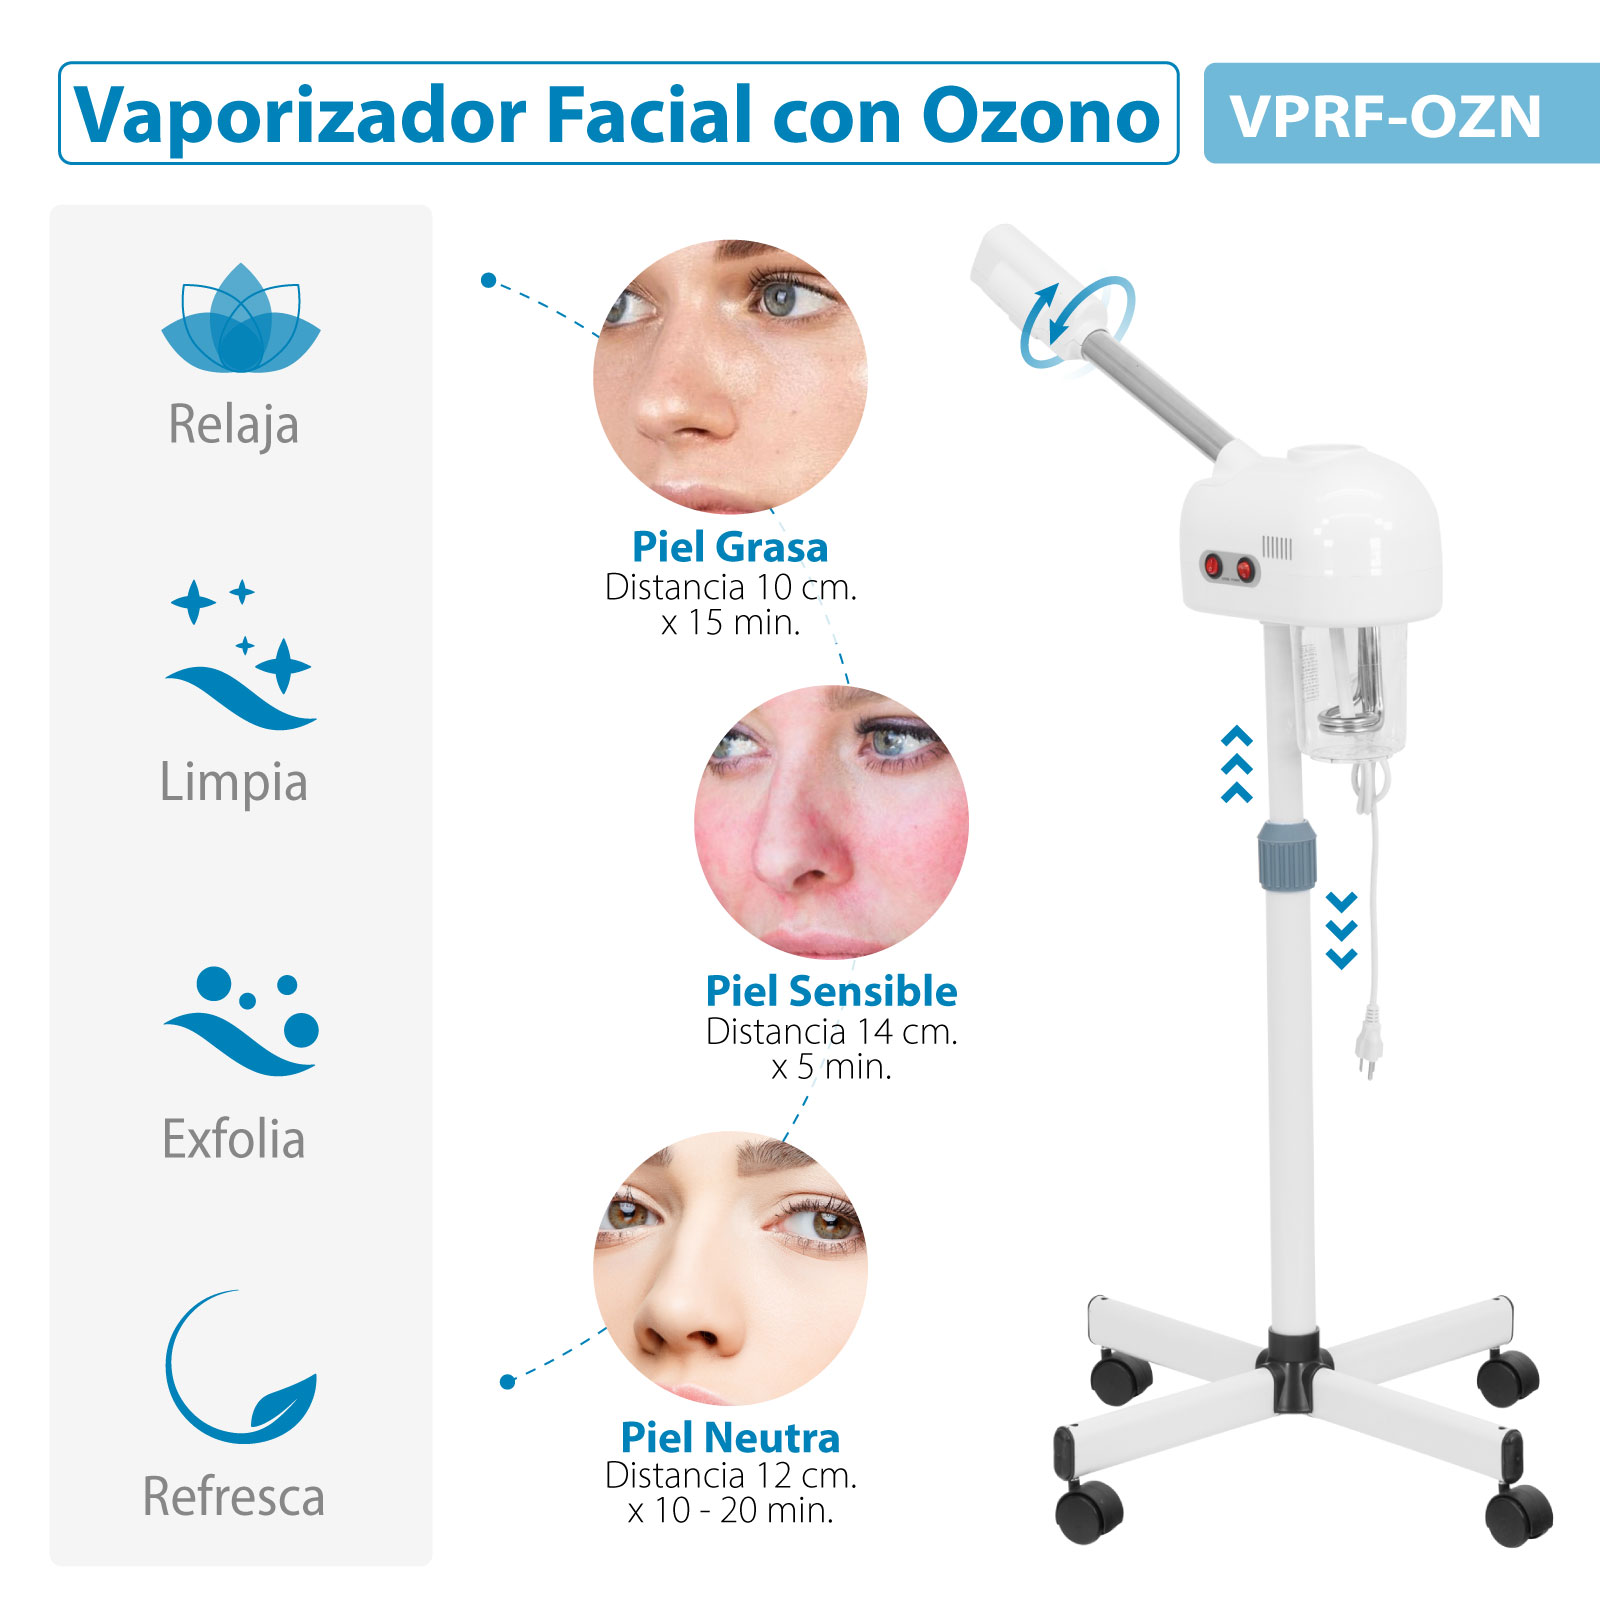 Vaporizador Facial Profesional Relajacion por Vapor de Ozono